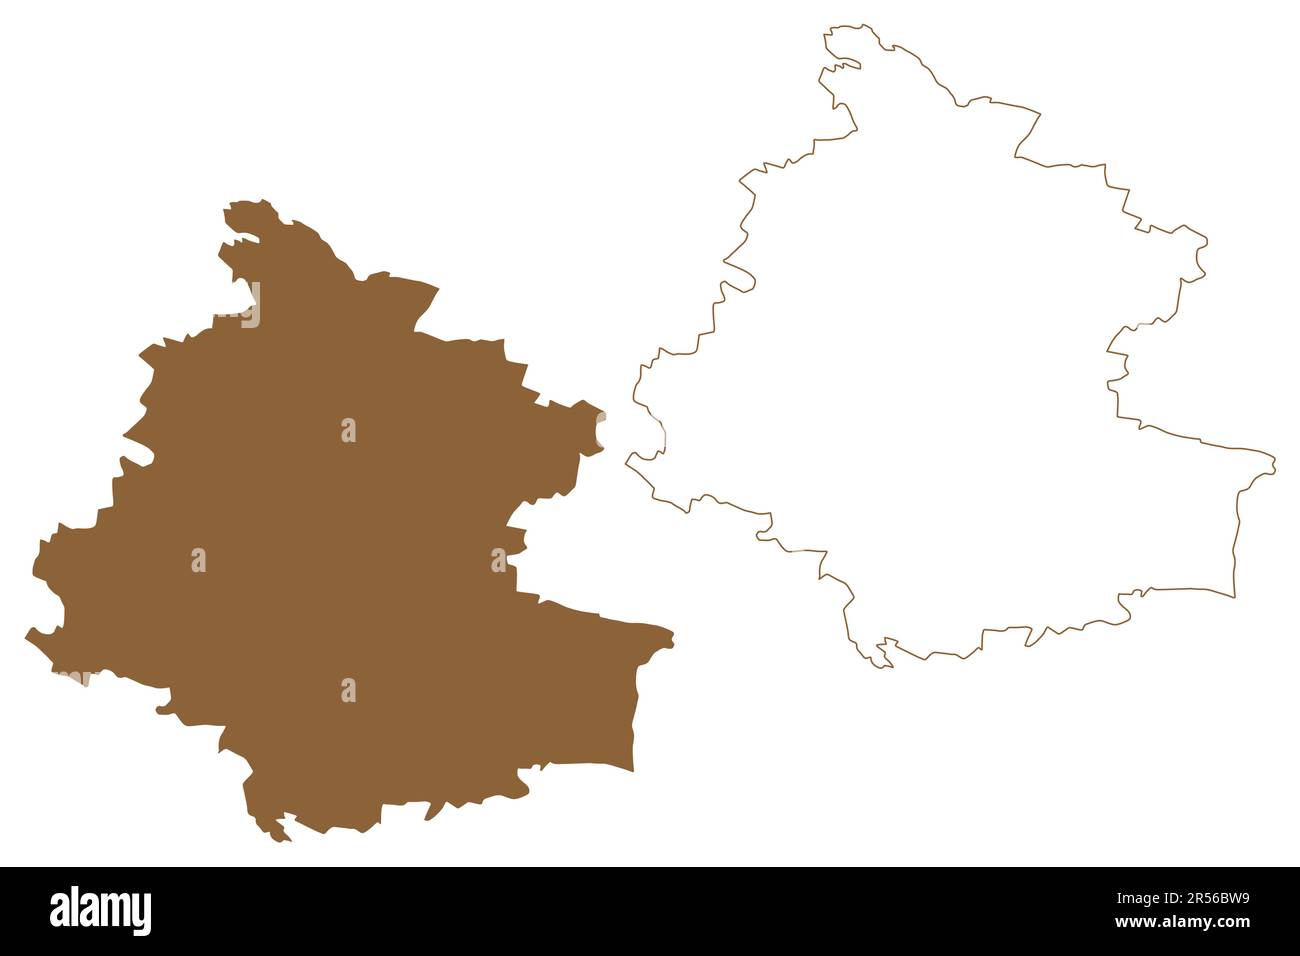 Distretto del corno (Repubblica d'Austria o Österreich, bassa Austria o stato di Niederösterreich) illustrazione vettoriale della mappa, schizzo dello schizzo dello scribble Bezirk Mappa del corno Illustrazione Vettoriale